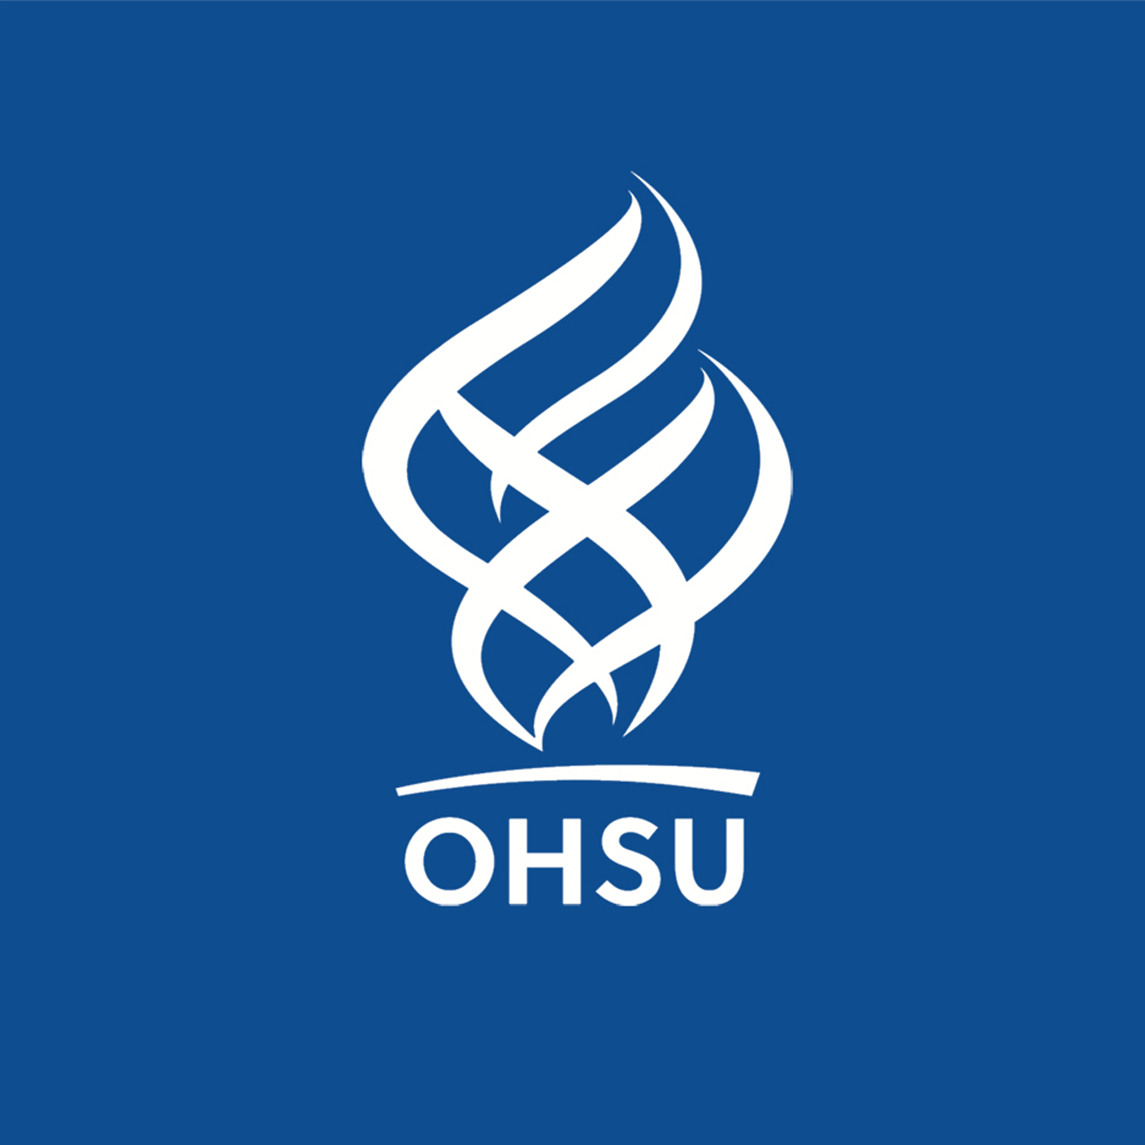 Wacom for Business Healthcare esignature OHSU